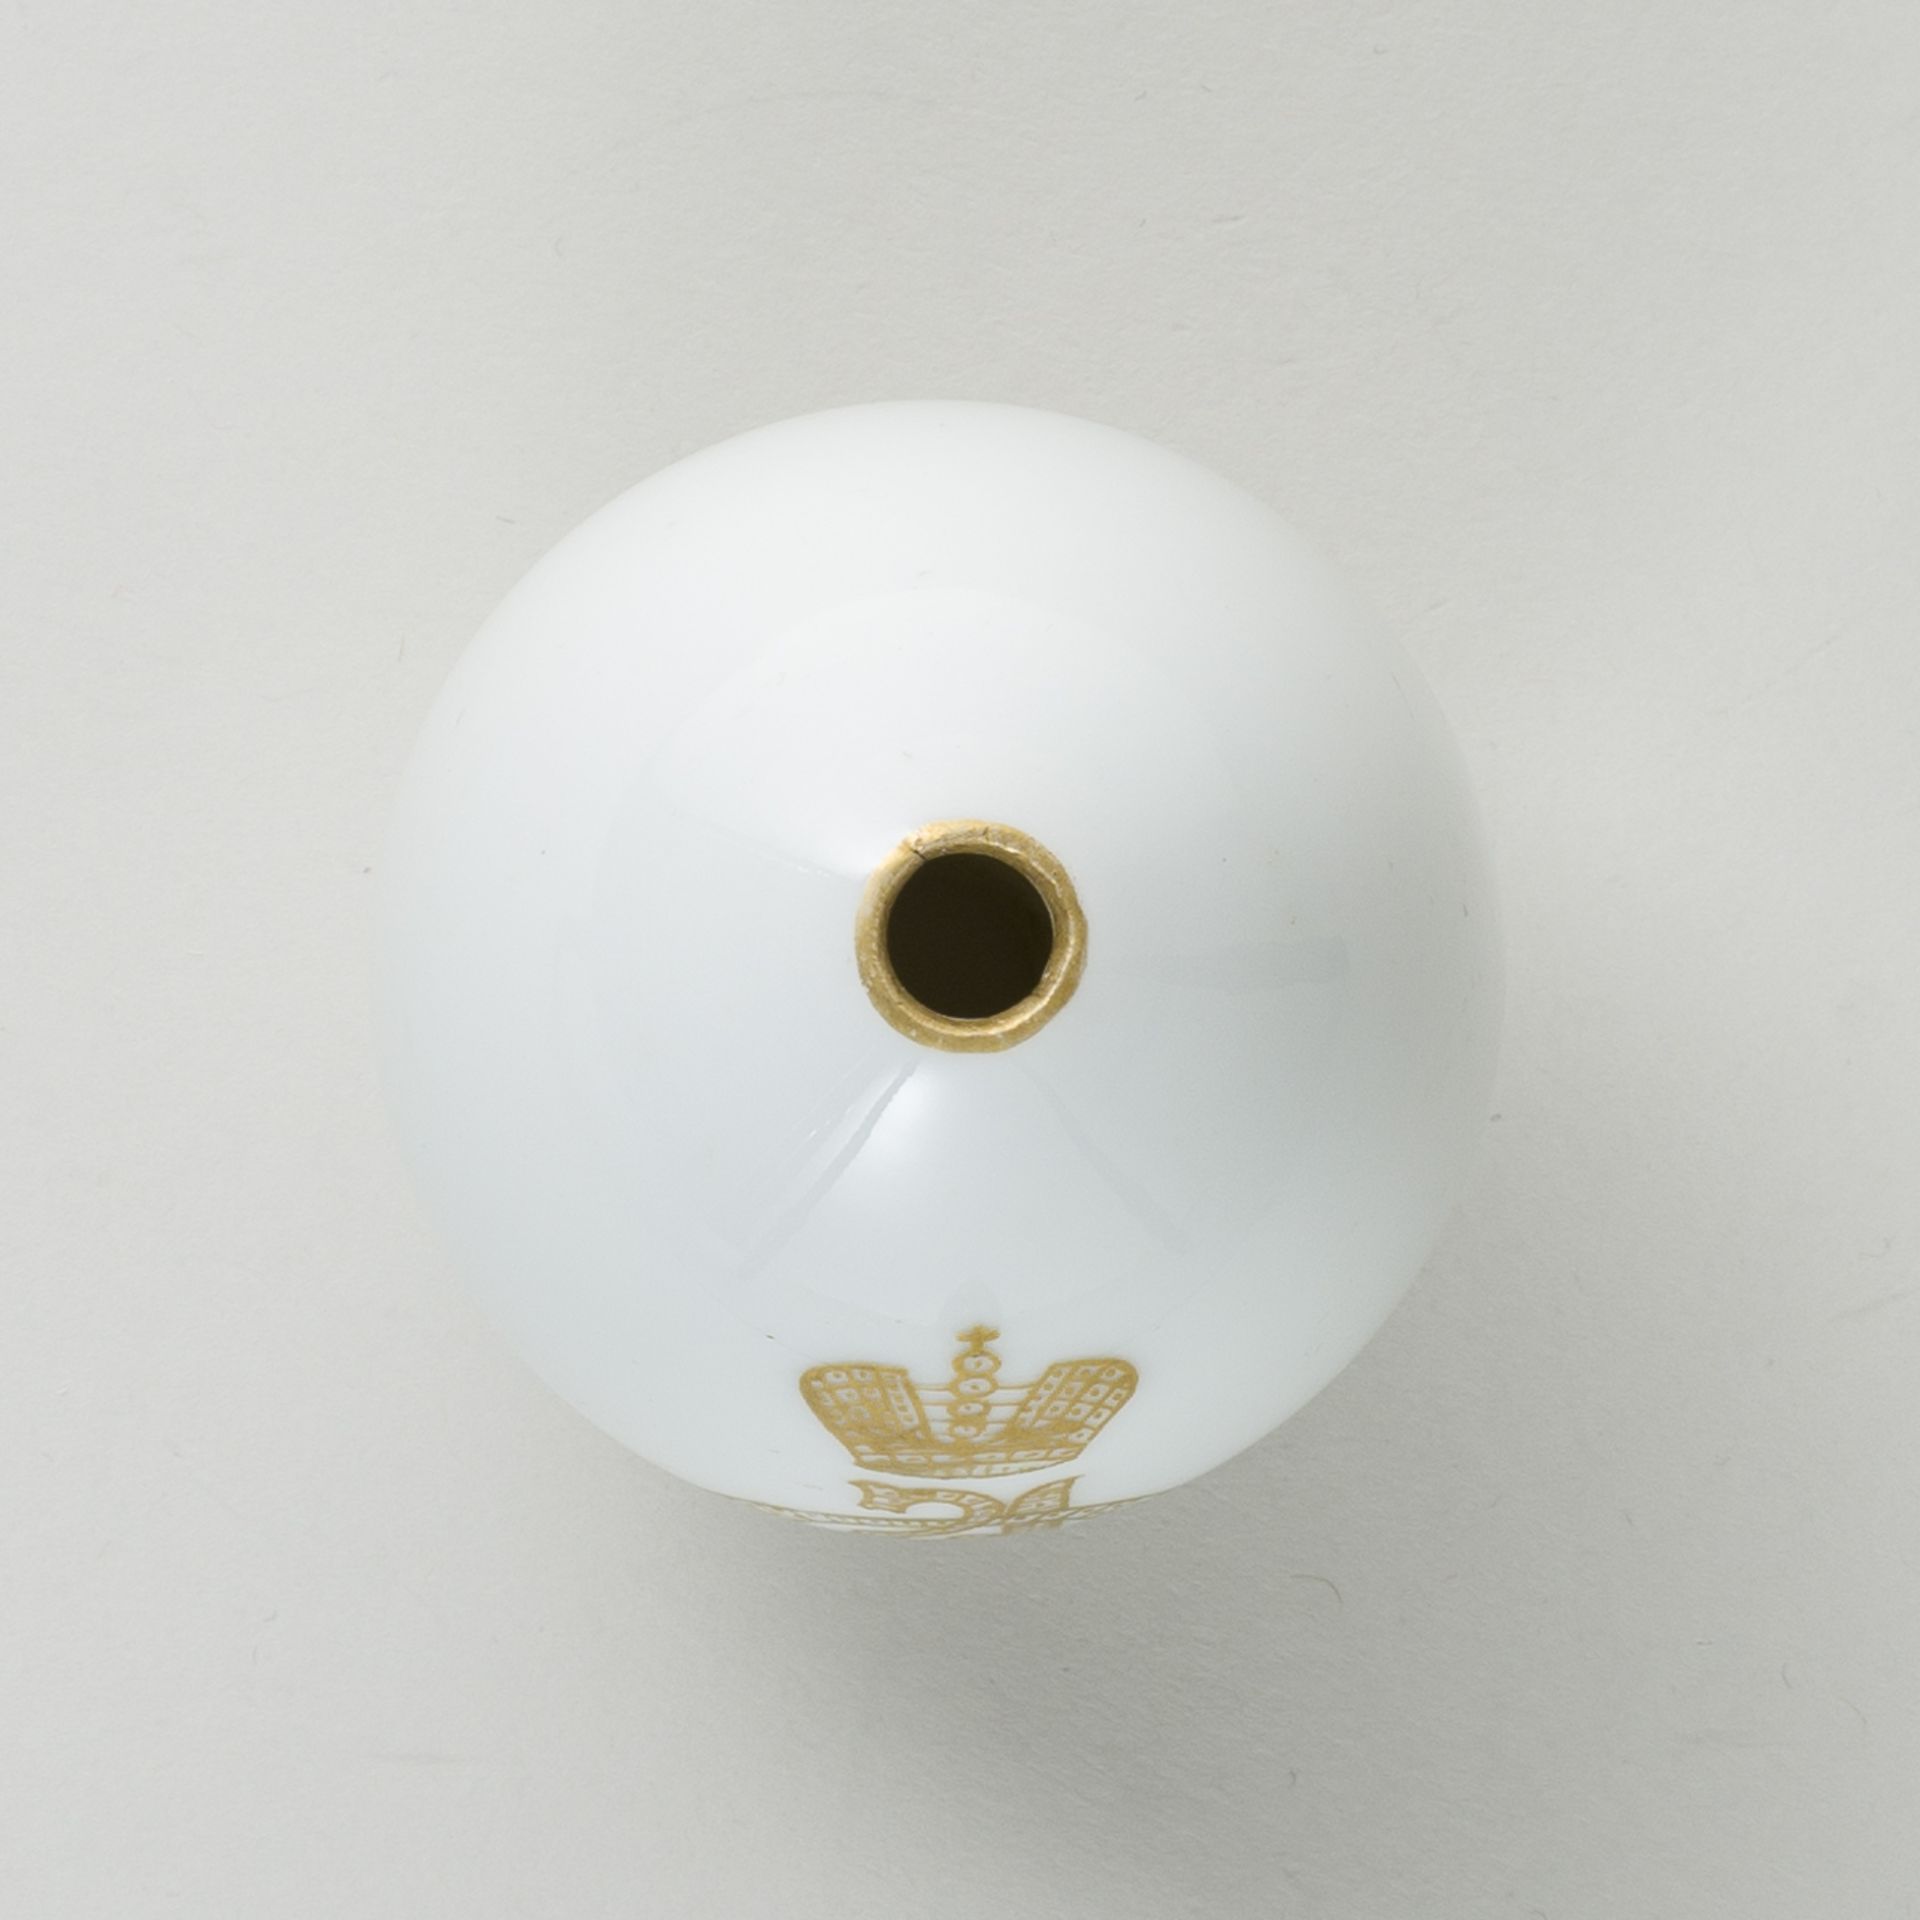 Russisches Porzellan-Ei mit goldenem gekrönten Monogramm Zar Nikolaus II - Bild 5 aus 6